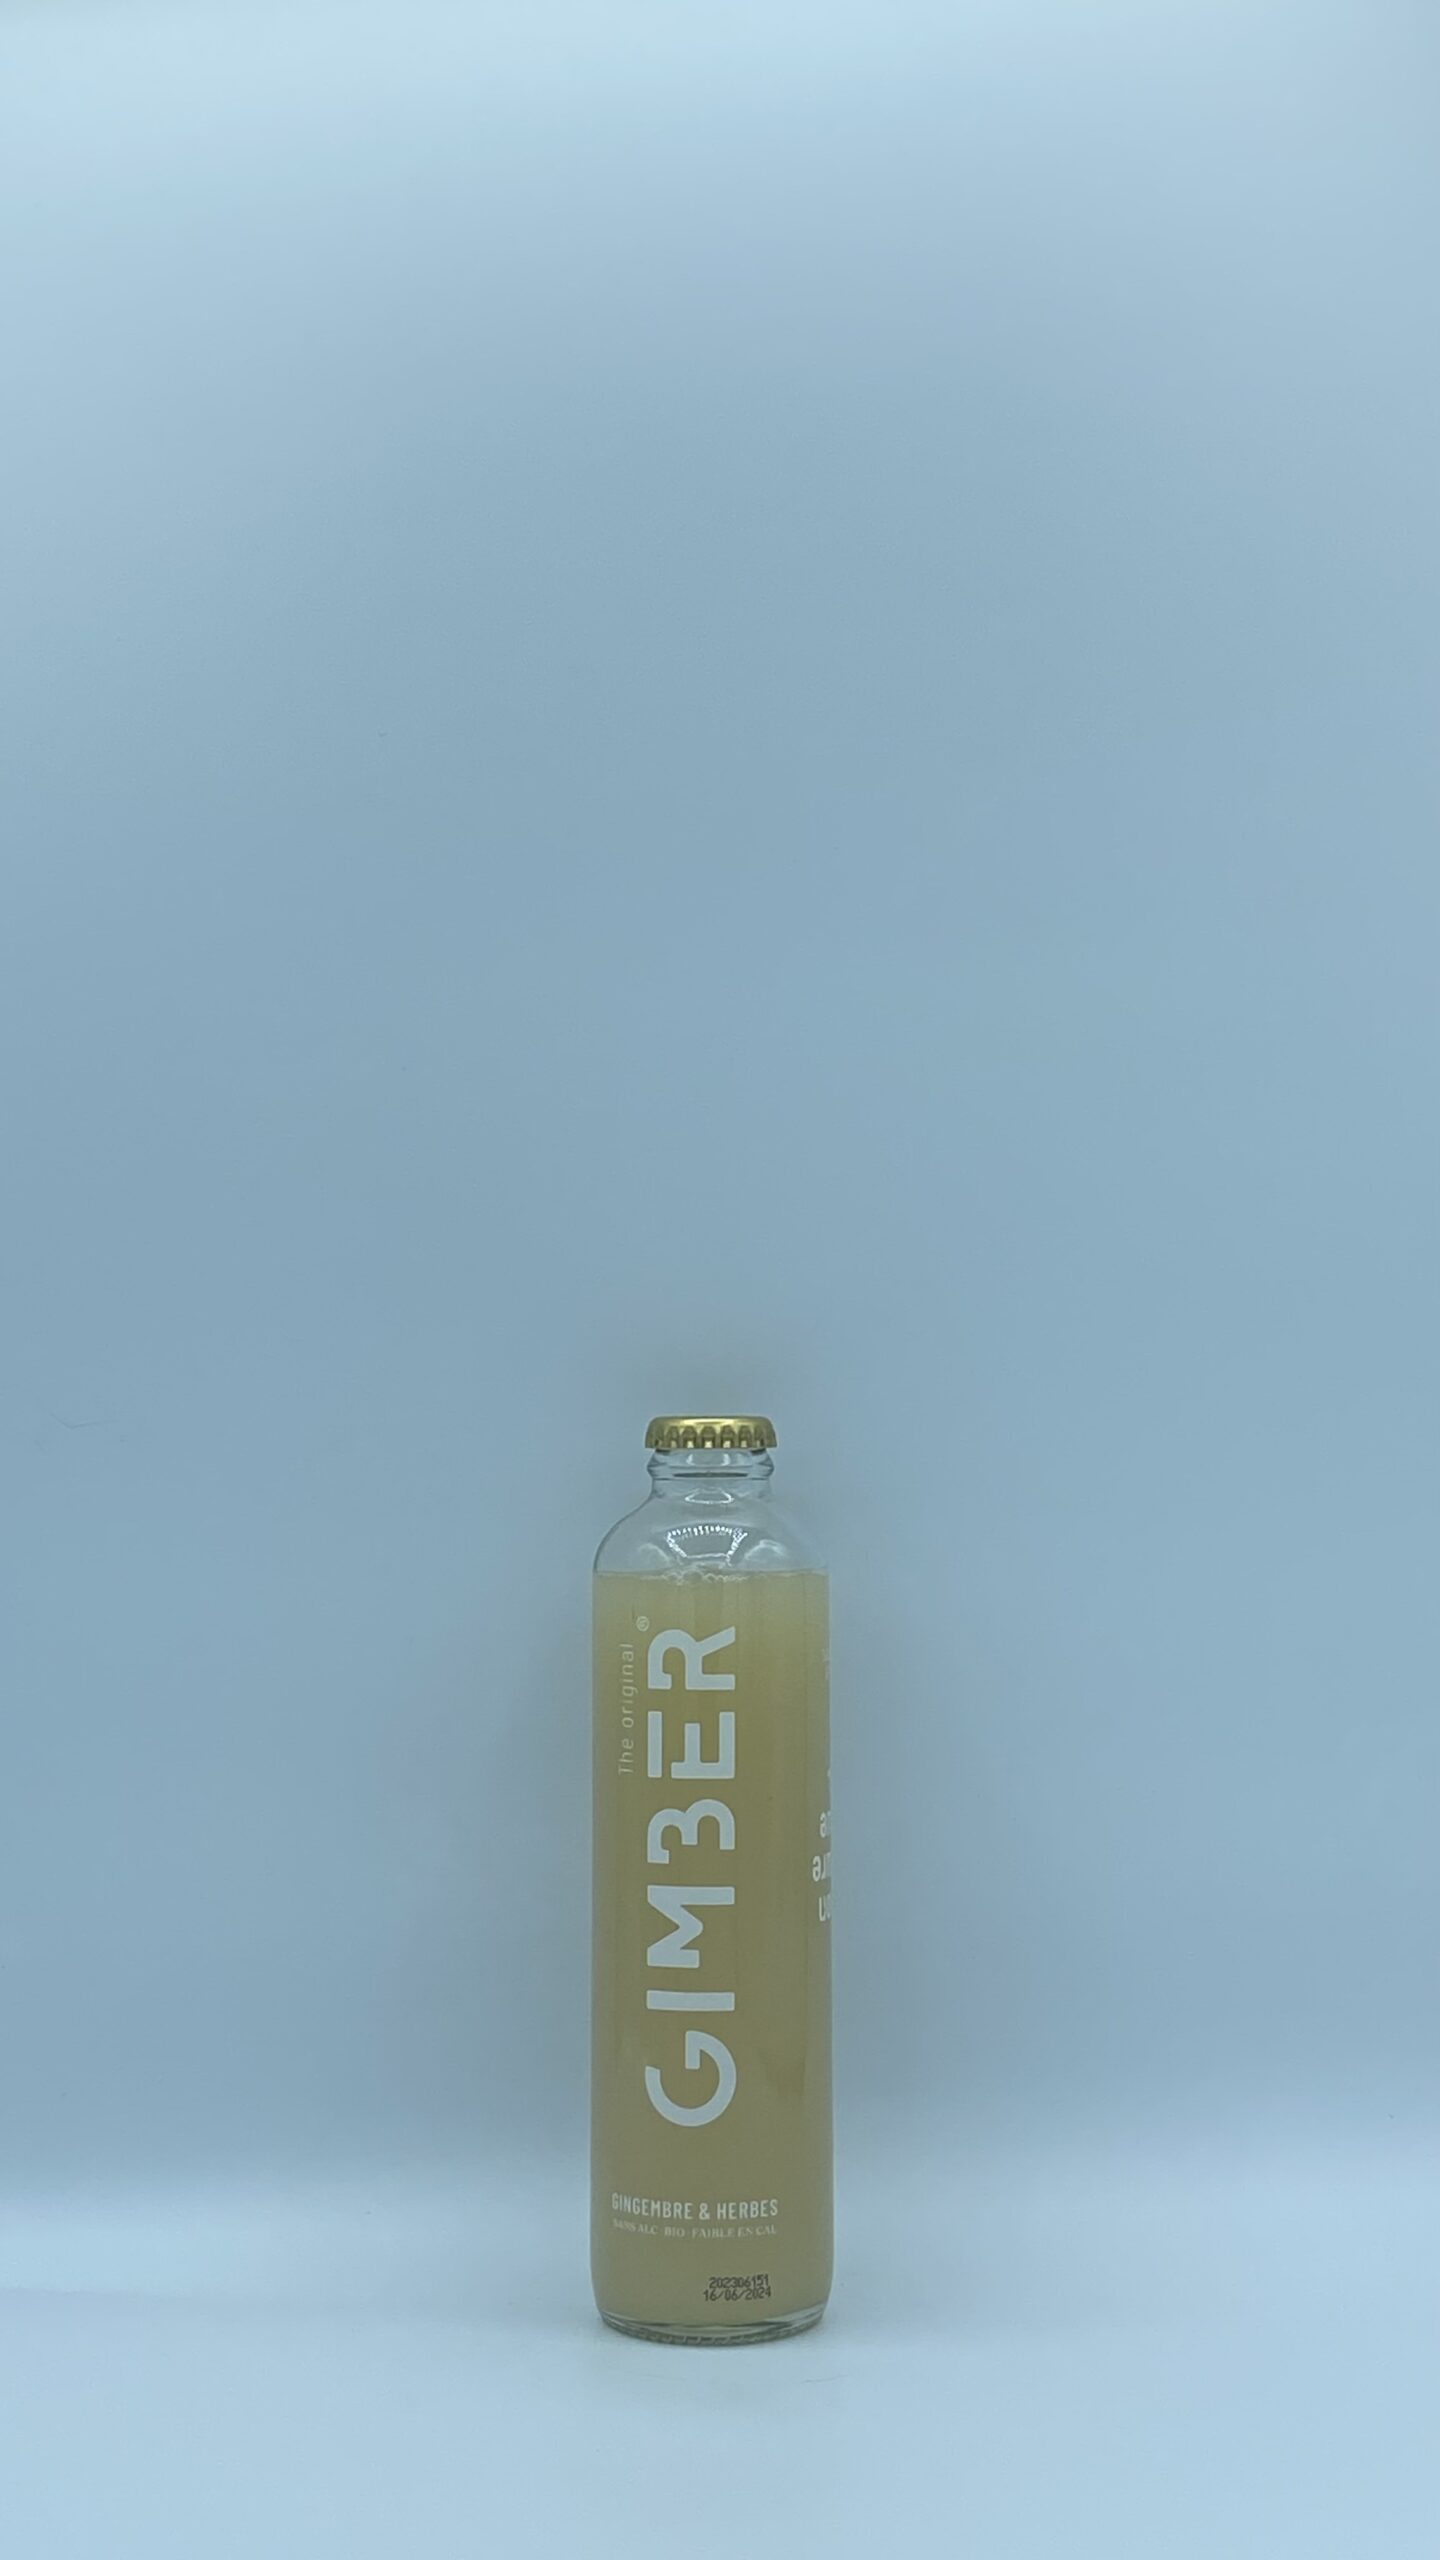 Concentré de Gingembre et herbes Biologique bouteille en verre sans alcool 250ml Gimber